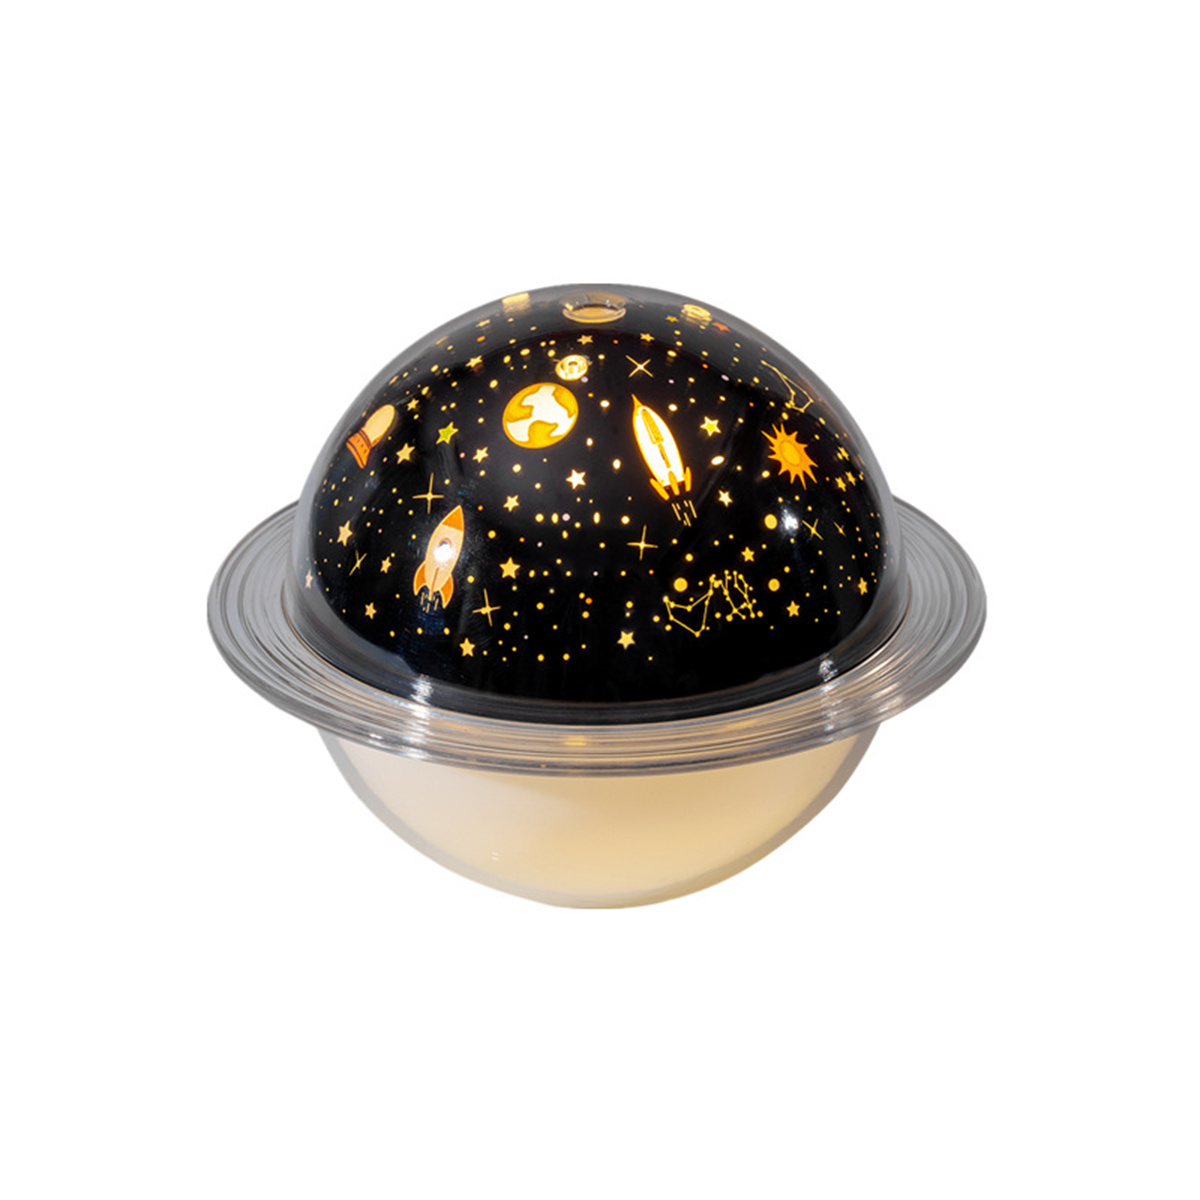 10 Luftbefeuchtung Sternmodell Luftbefeuchter SYNTEK LED schwarz Projektionslicht (Raumgröße: Luftbefeuchter m²) Luftbefeuchter Luftbefeuchter